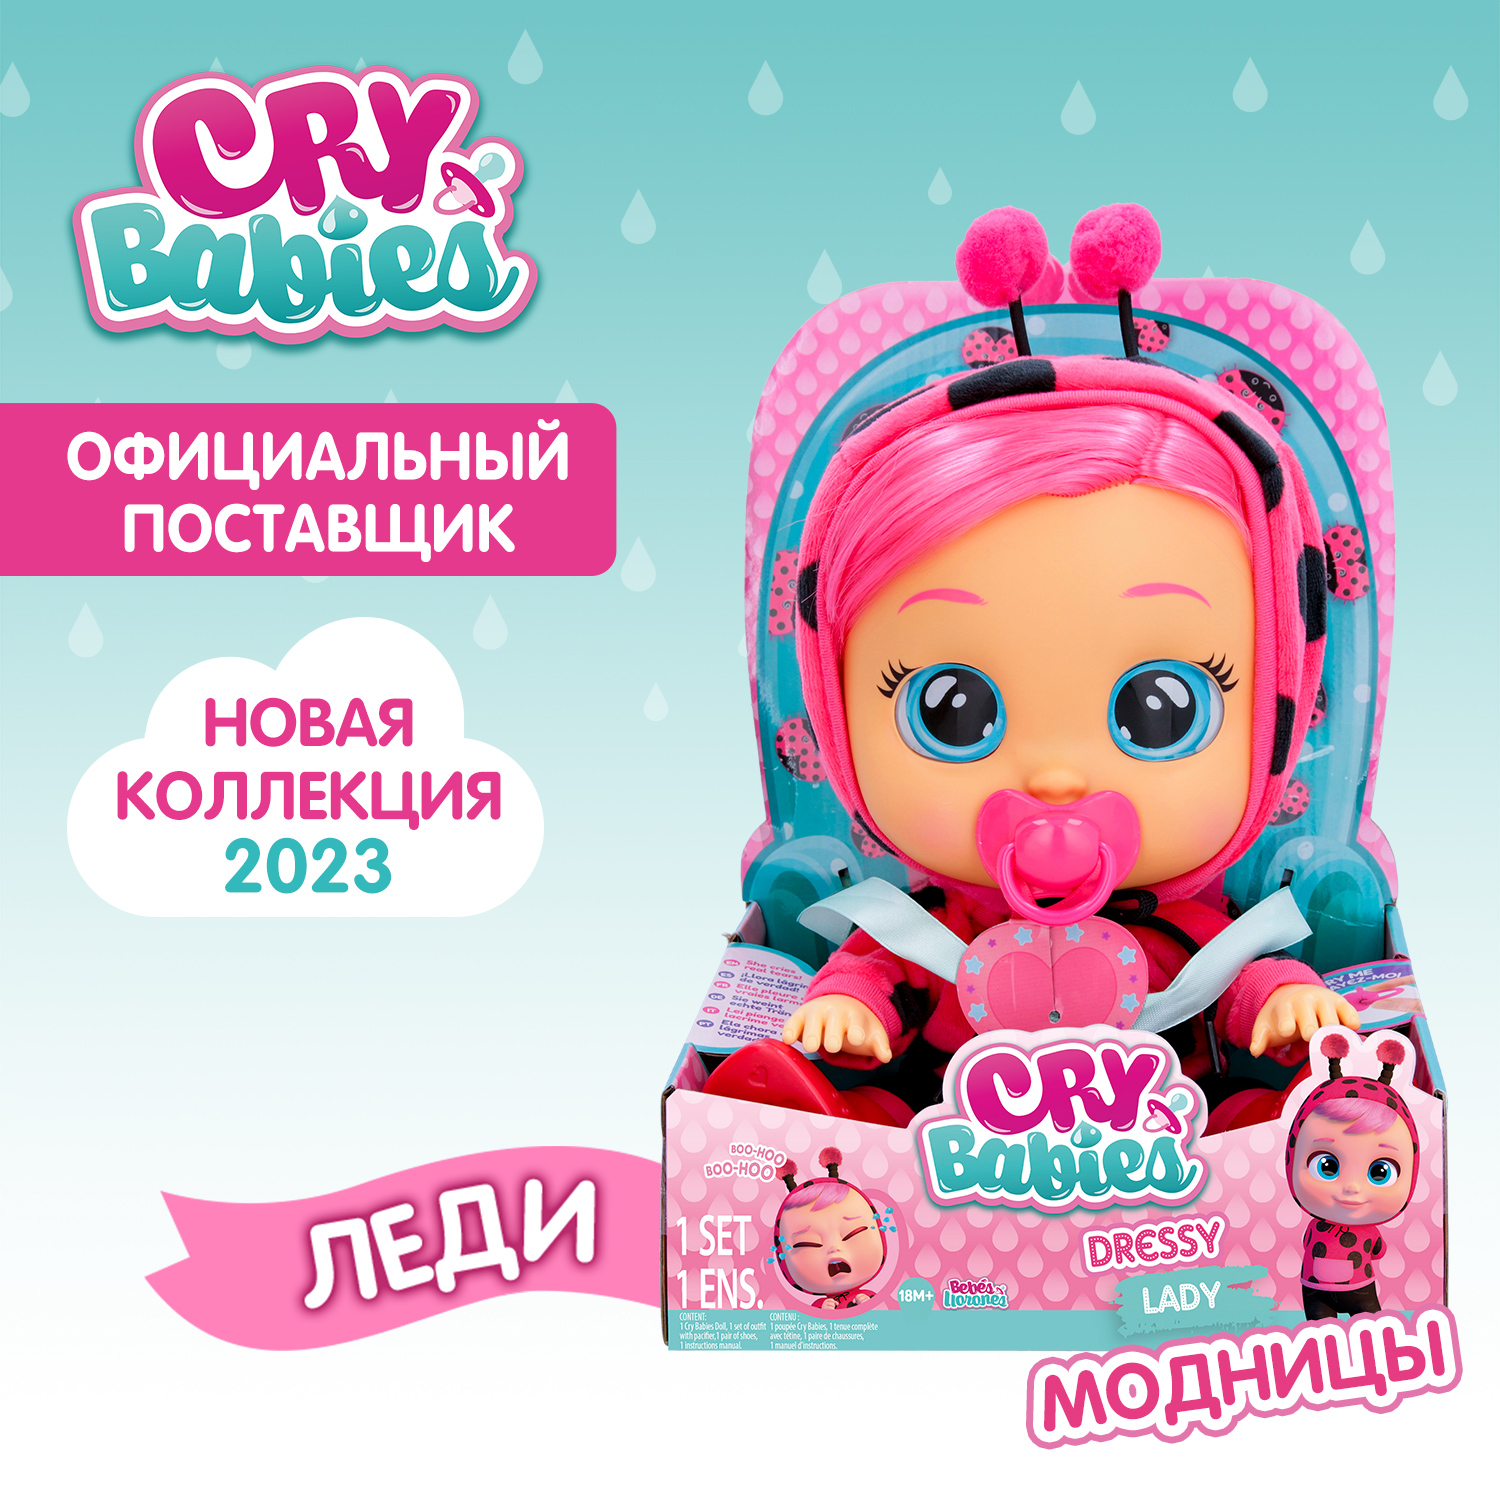 Кукла Cry Babies Леди Модница, интерактивная, плачущая, 40885 кукла cry babies дейзи модница интерактивная плачущая 40887